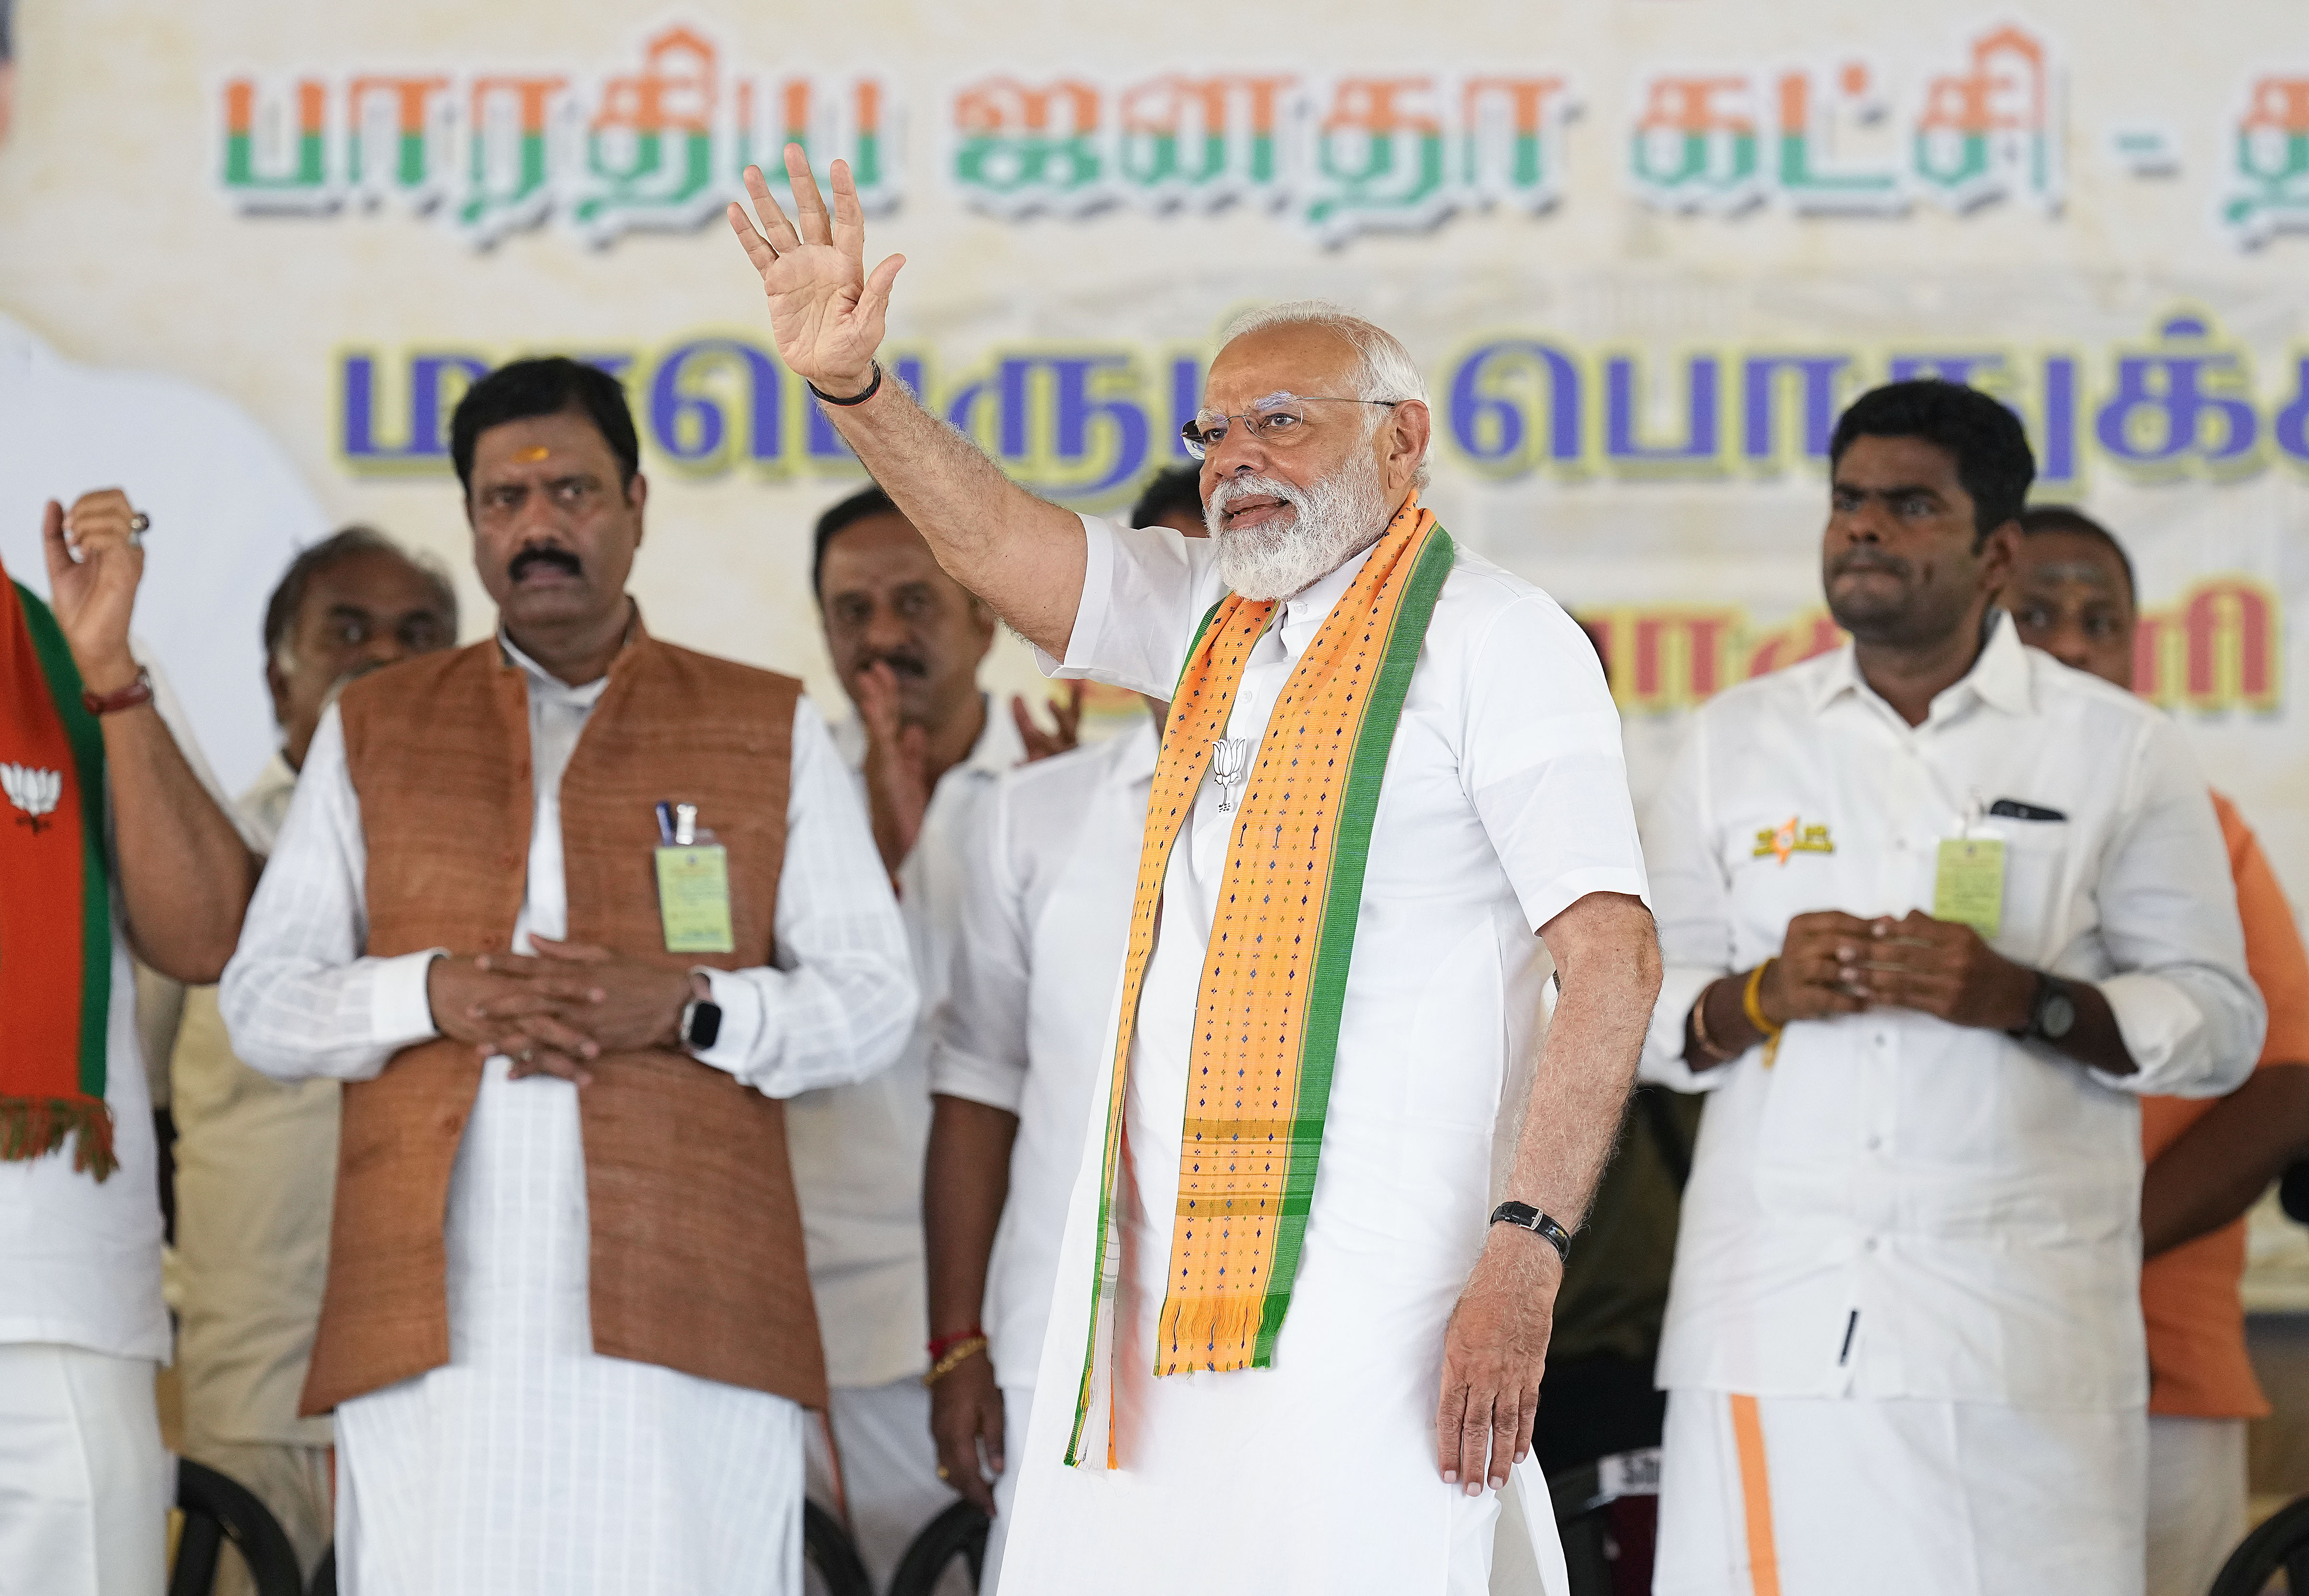 तमिलनाडु में परिवर्तन की बहुत बड़ी आहट, टूटेगा ‘इंडिया’ गठबंधन का सारा घमंड, कन्याकुमारी में गरजे PM मोदी